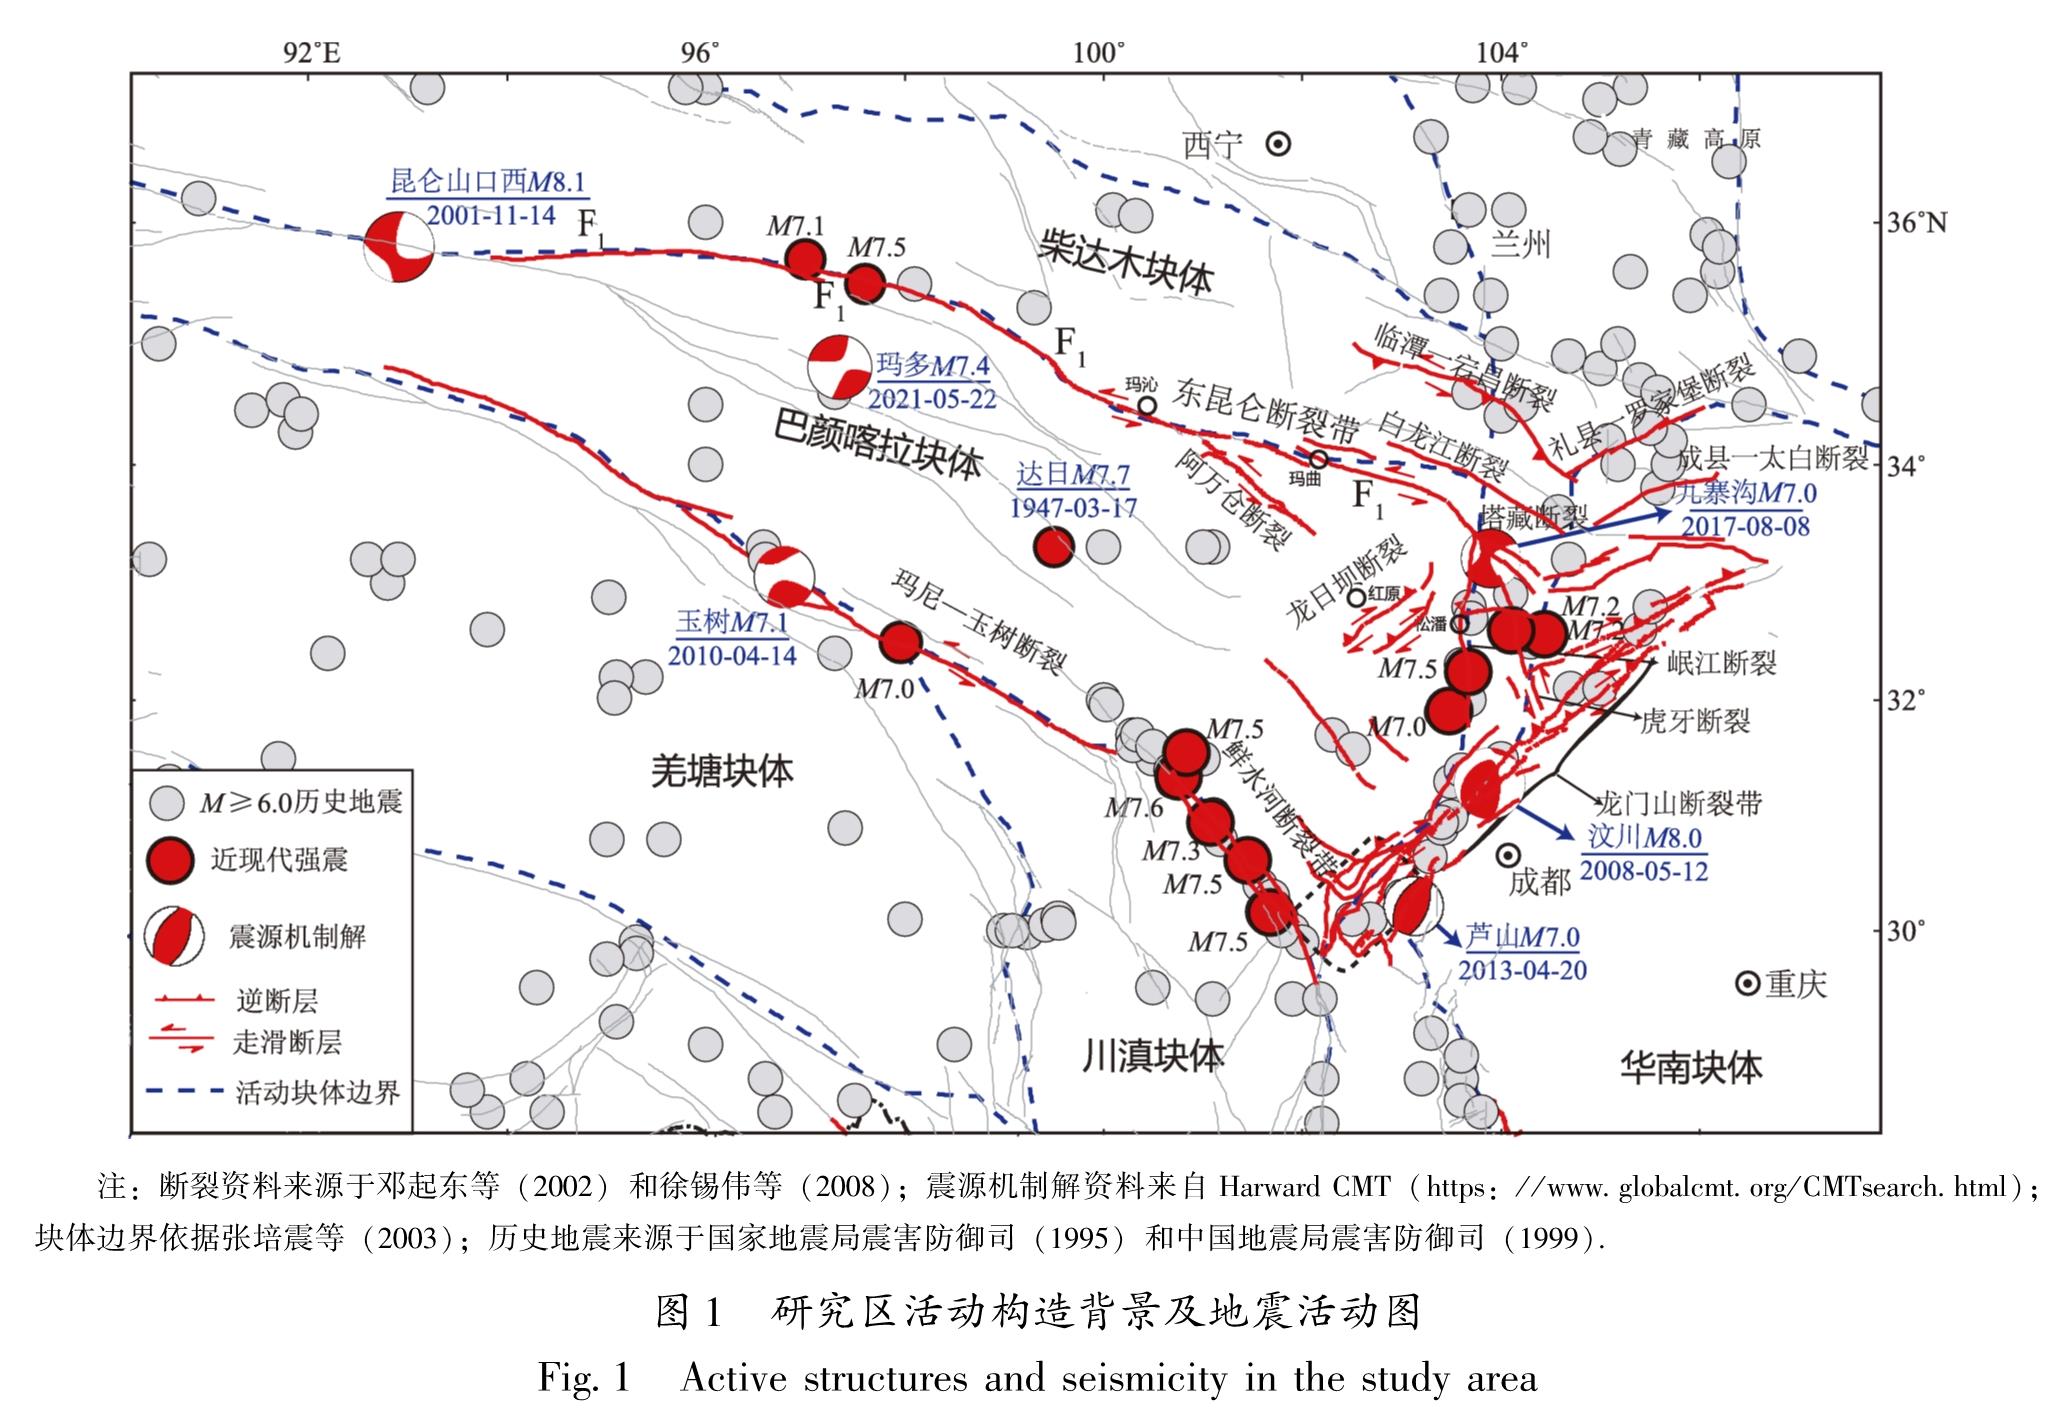 图1 研究区活动构造背景及地震活动图<br/>Fig.1 Active structures and seismicity in the study area